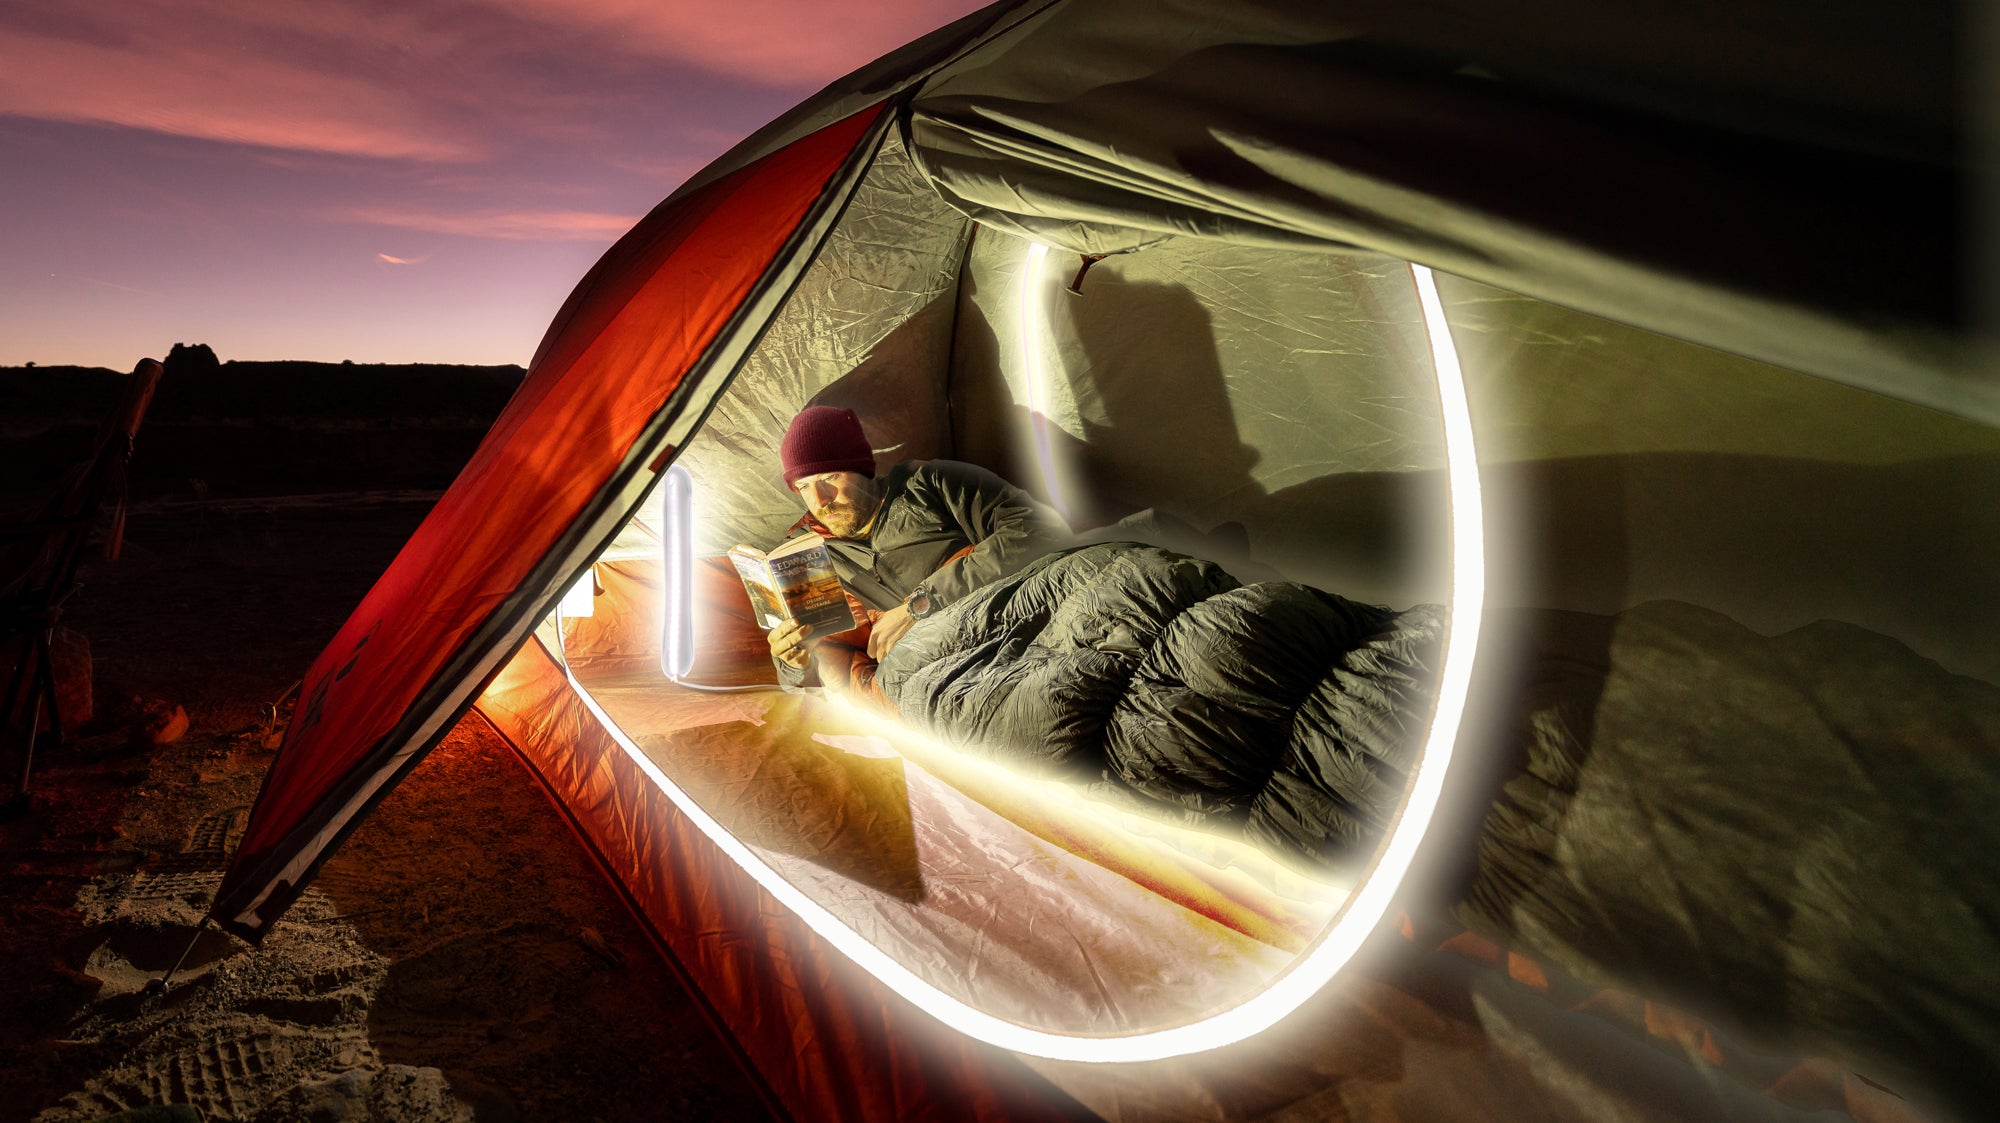 Klymit Illuminates the Camping Industry